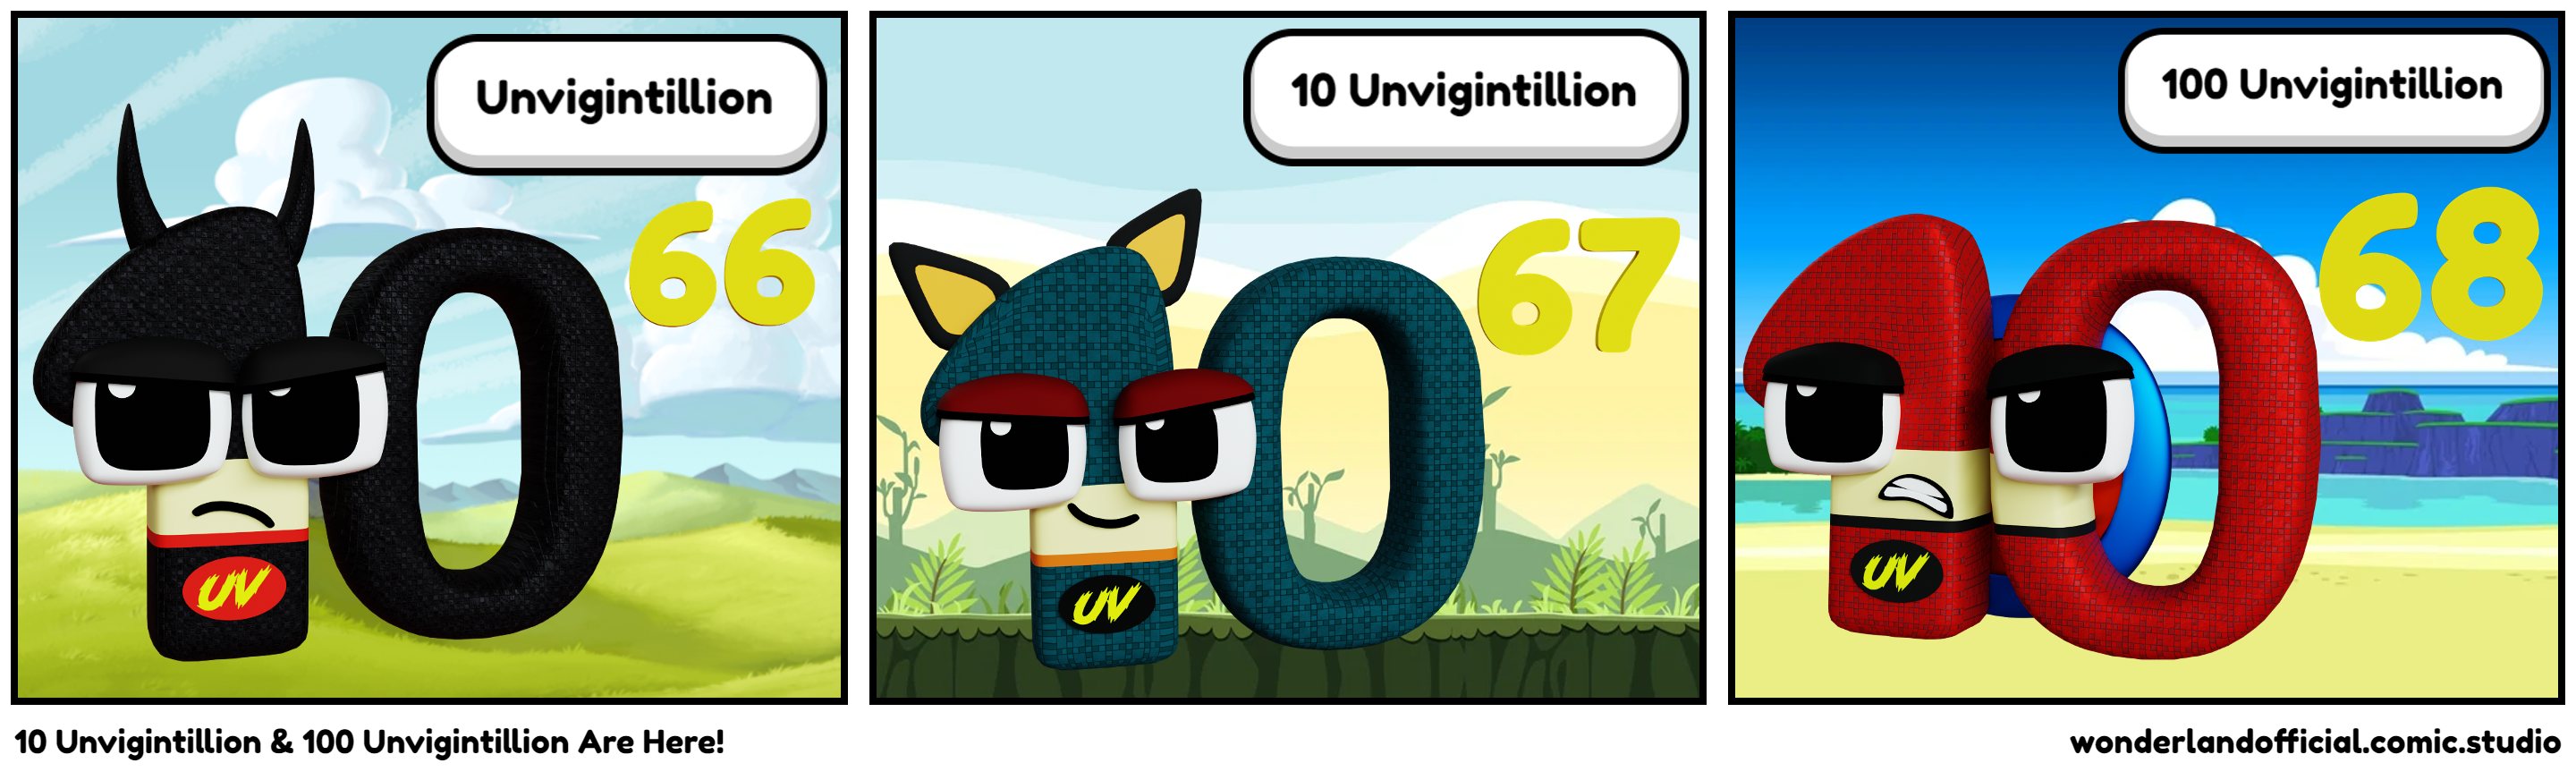 10 Unvigintillion & 100 Unvigintillion Are Here!